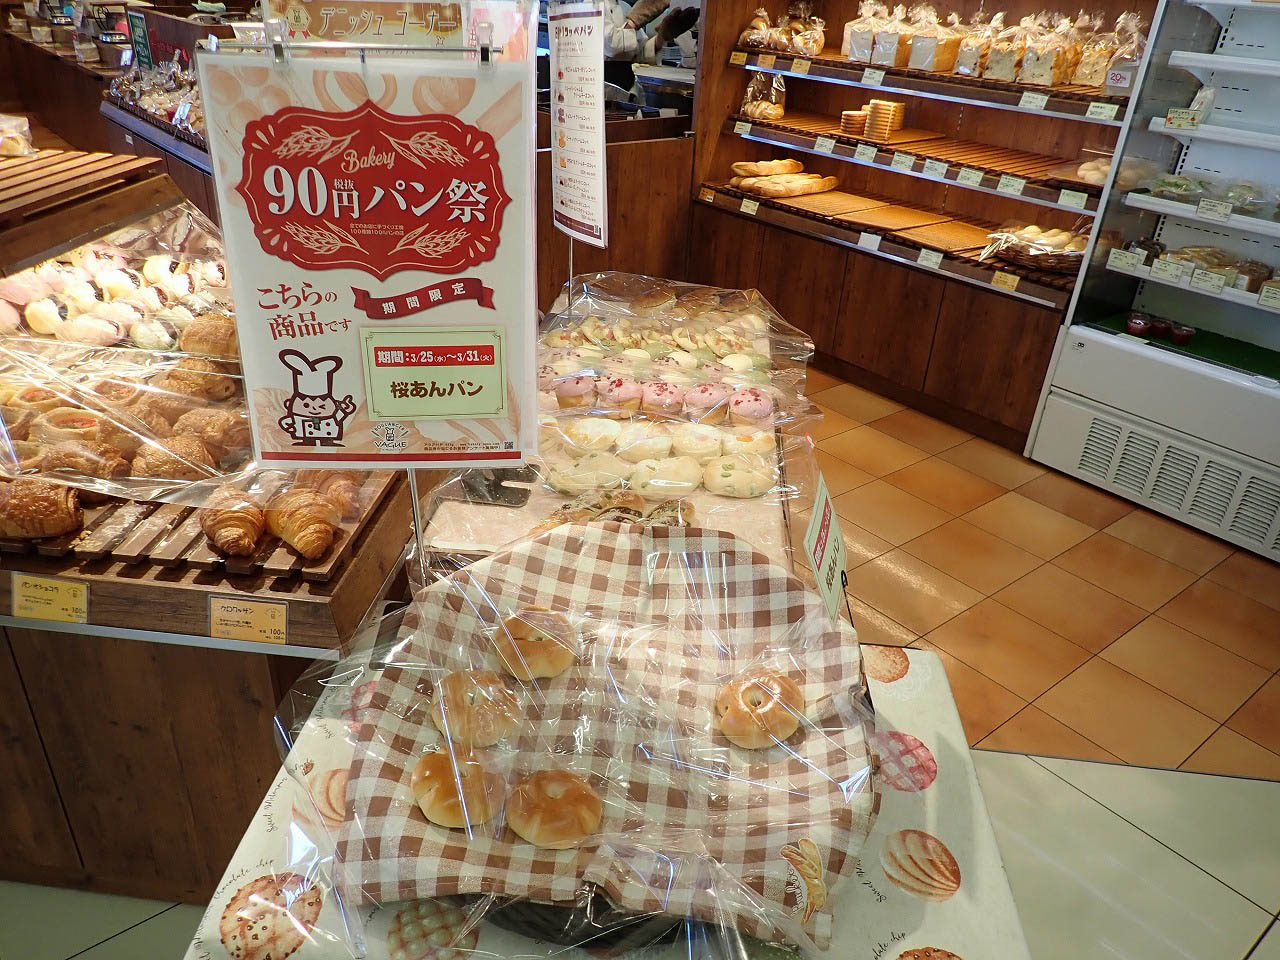 90円パン祭りの対象商品の桜あんパン